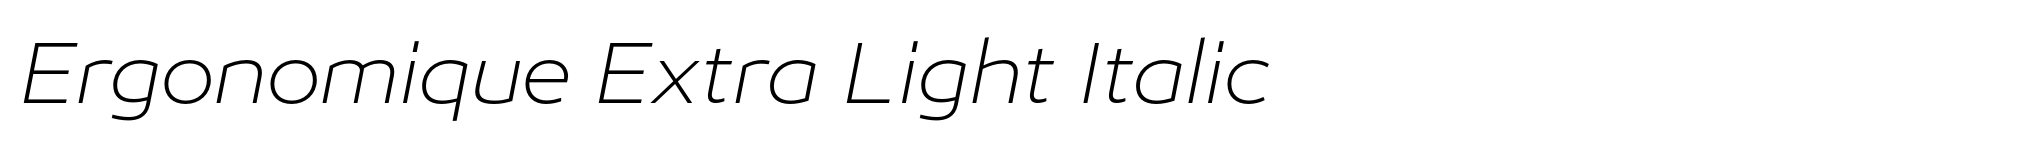 Ergonomique Extra Light Italic image